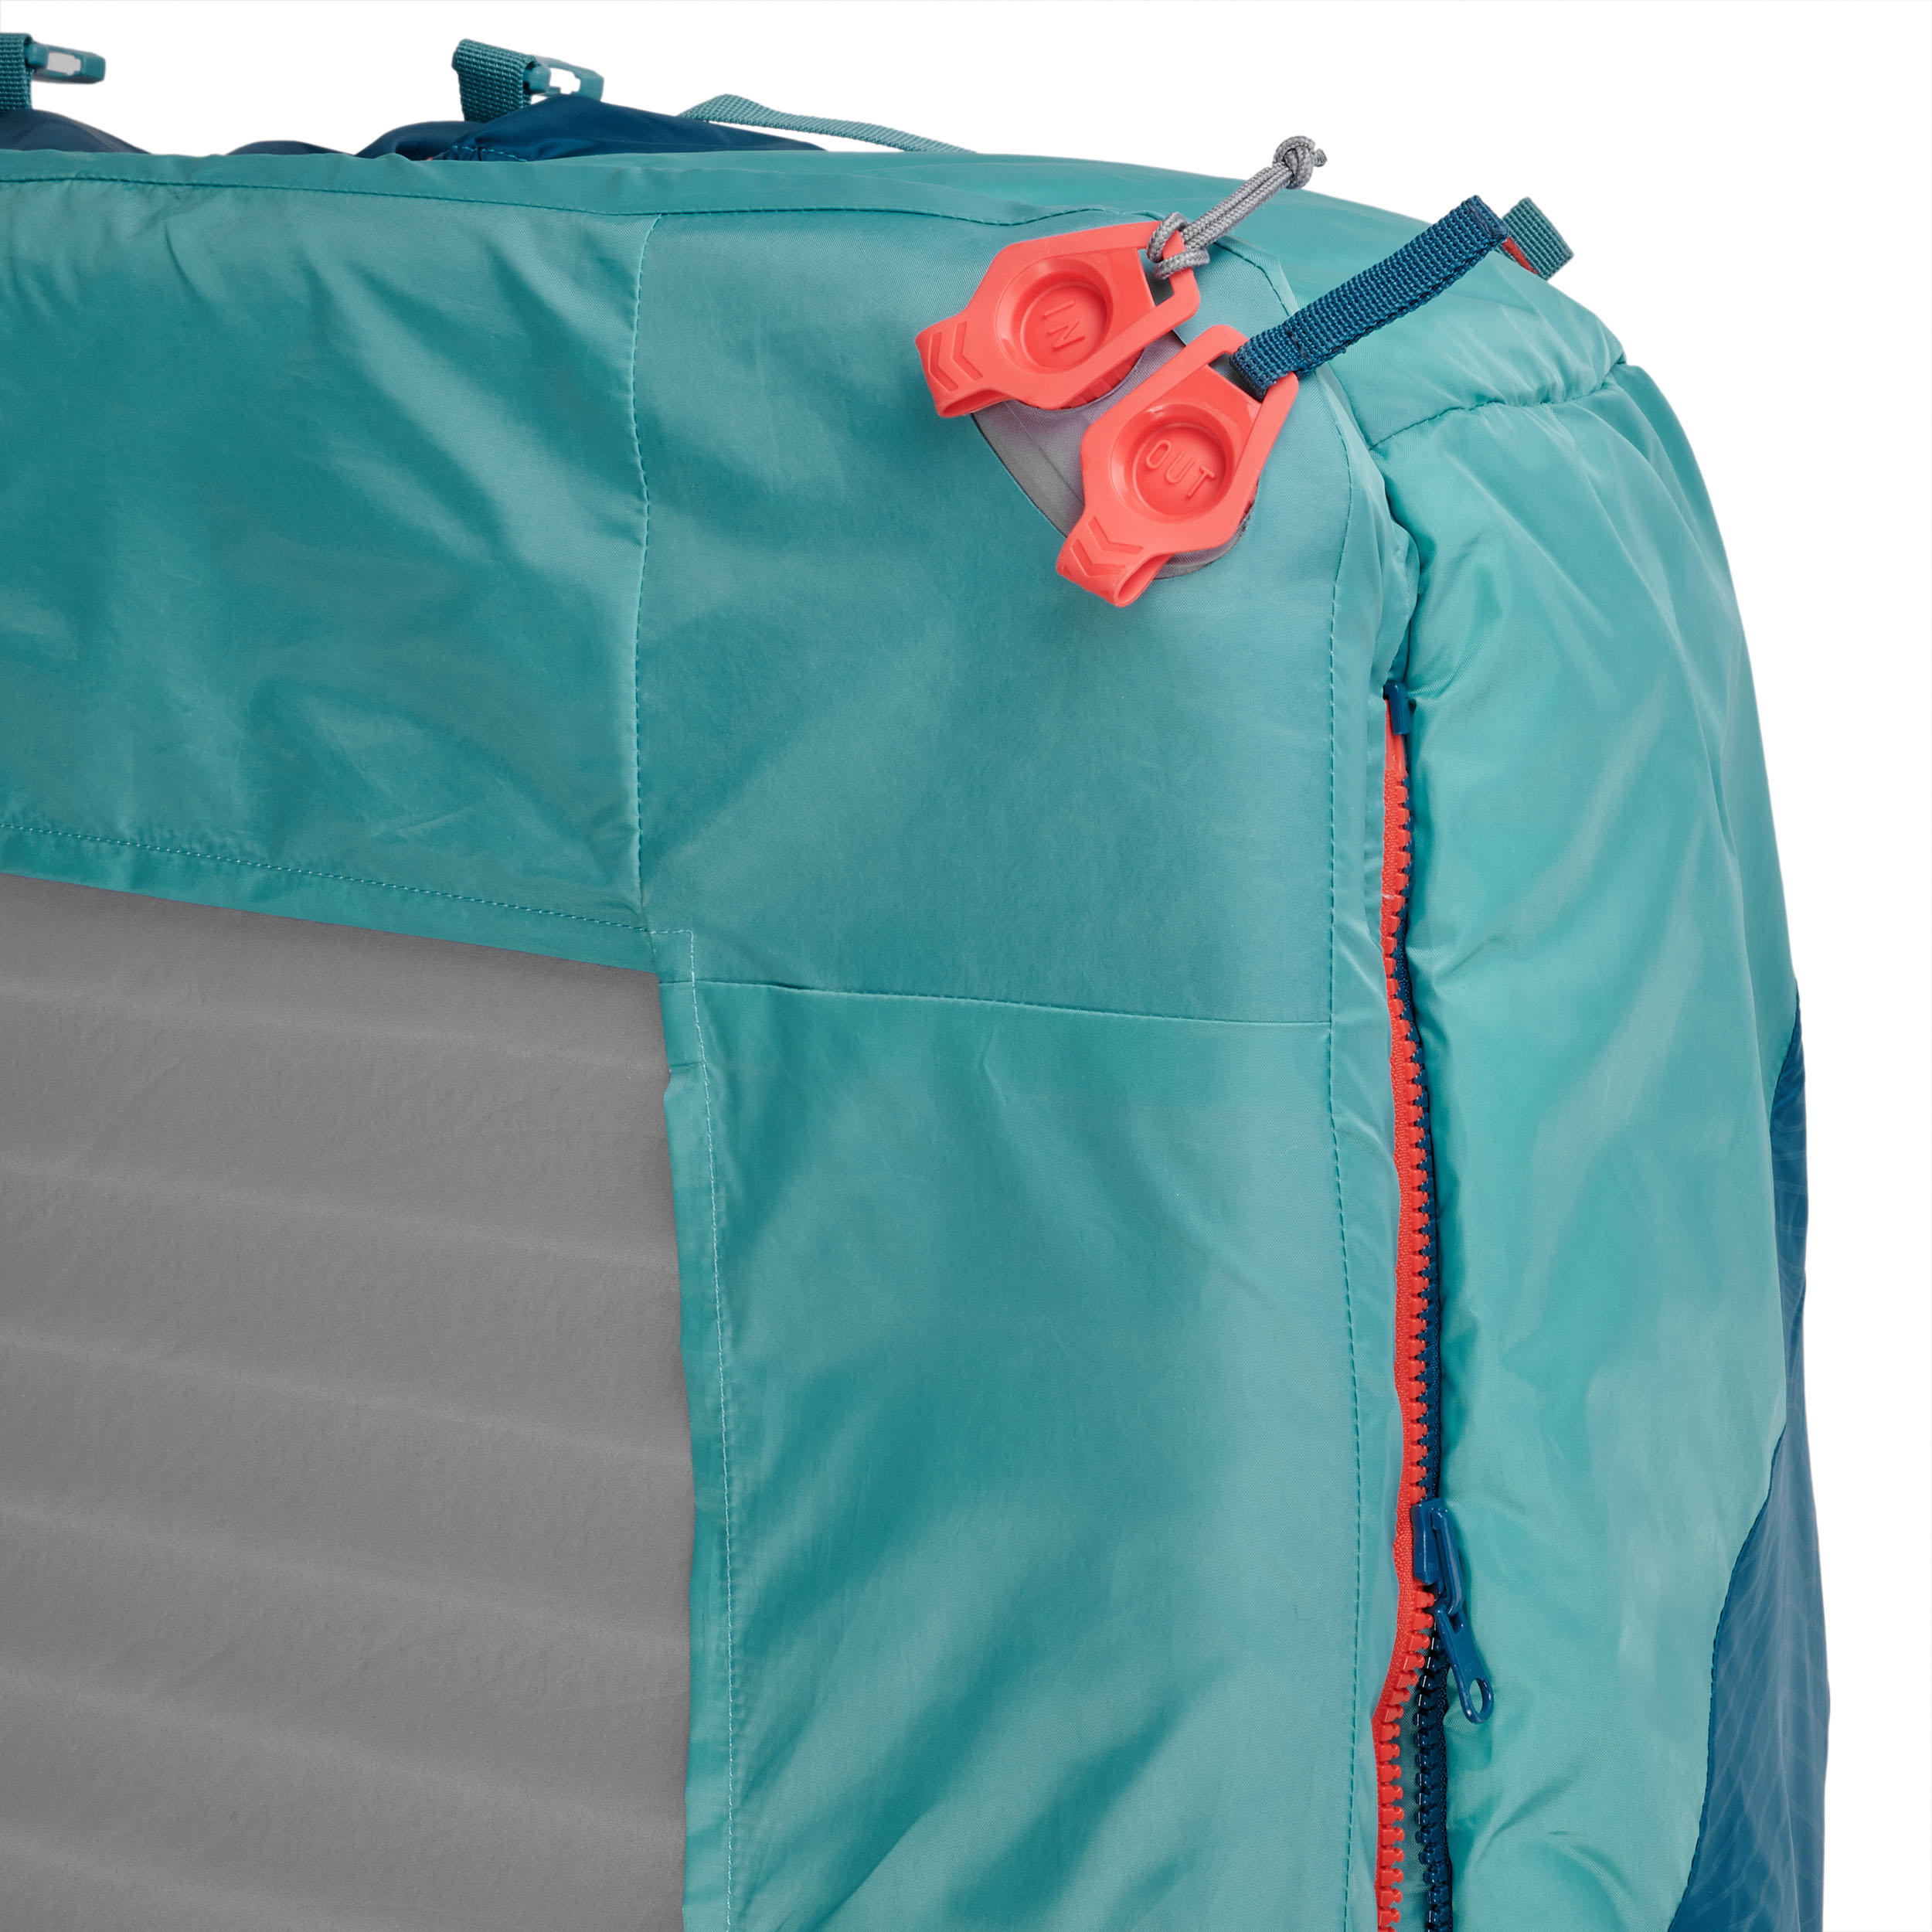 2-IN-1 SLEEPING BAG - SLEEPIN BED MH500 15°C XL 7/11